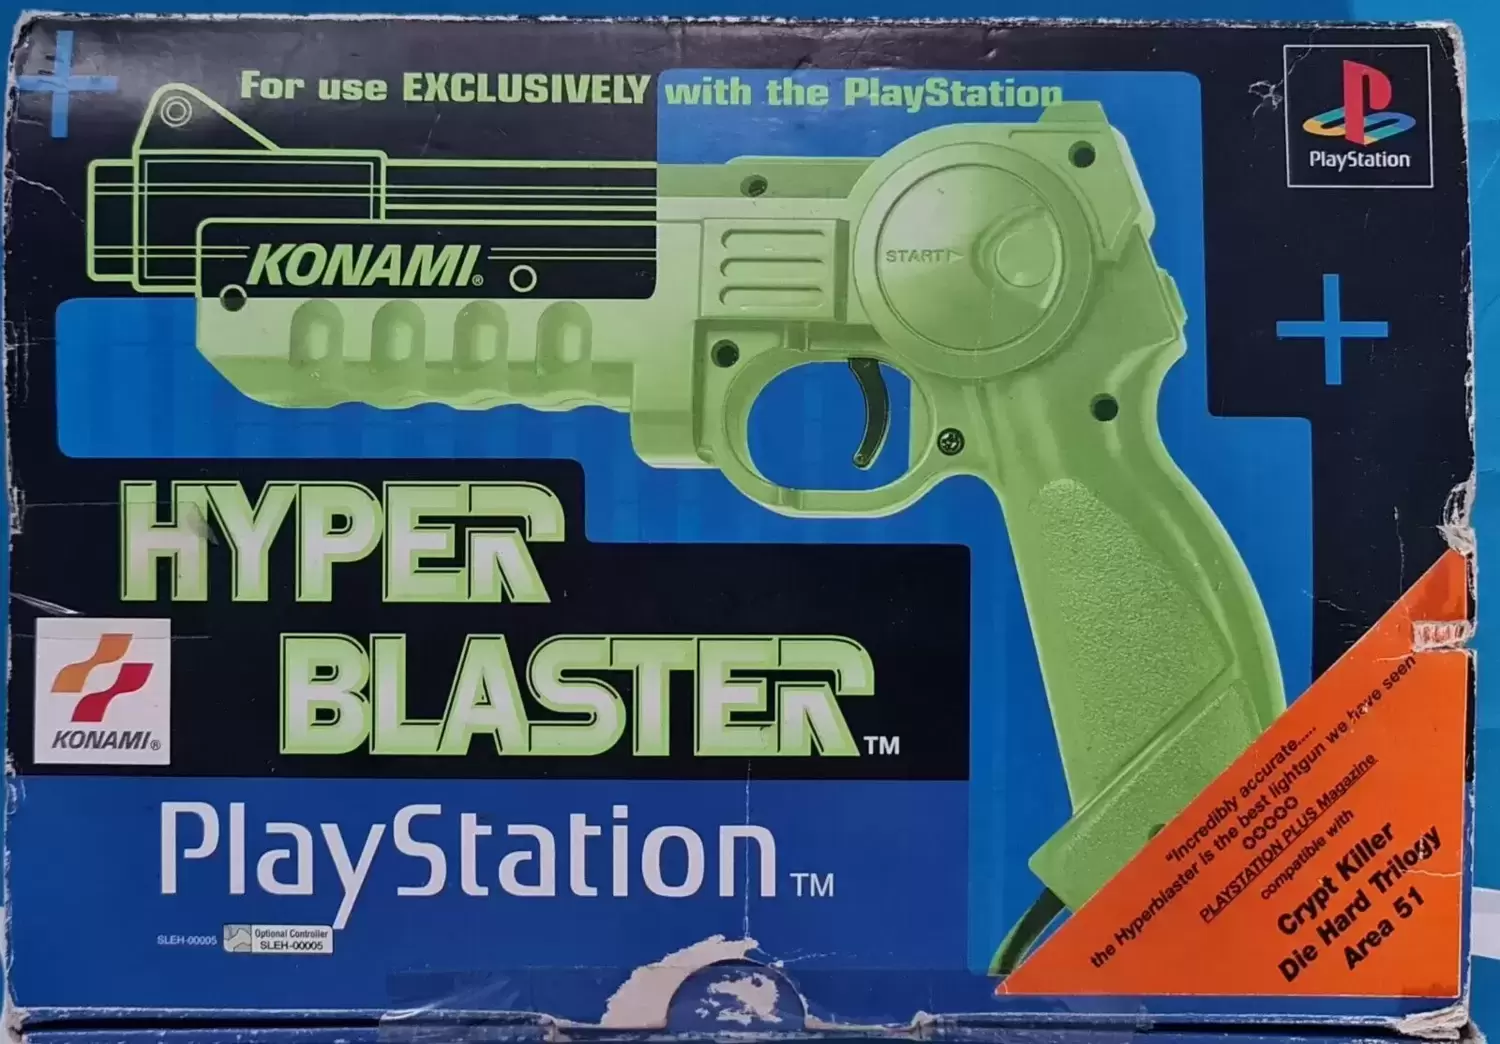 PlayStation material - Konami Hyper Blaster Euro